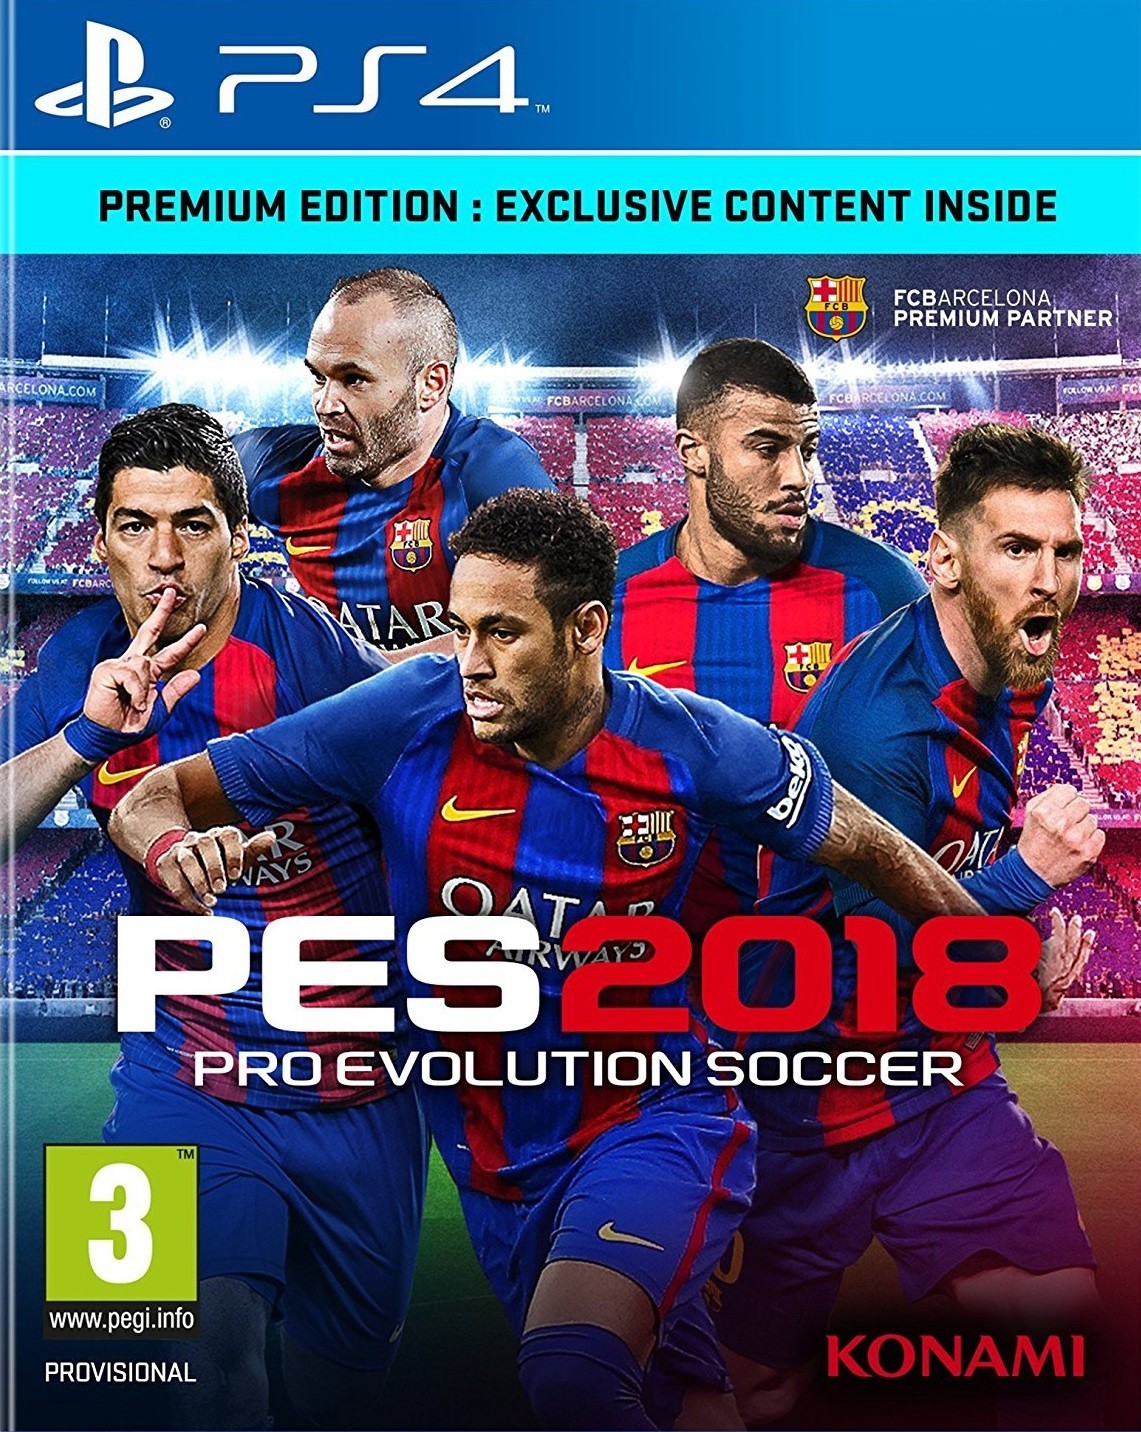 Pro Evolution Soccer 2018 (PS4), Konami